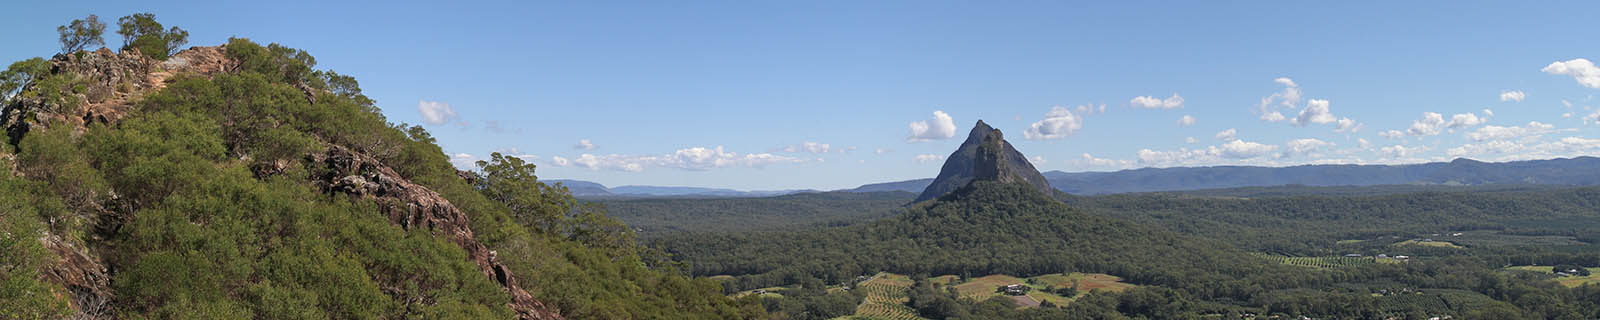 Panorama from top of Mount Ngungun